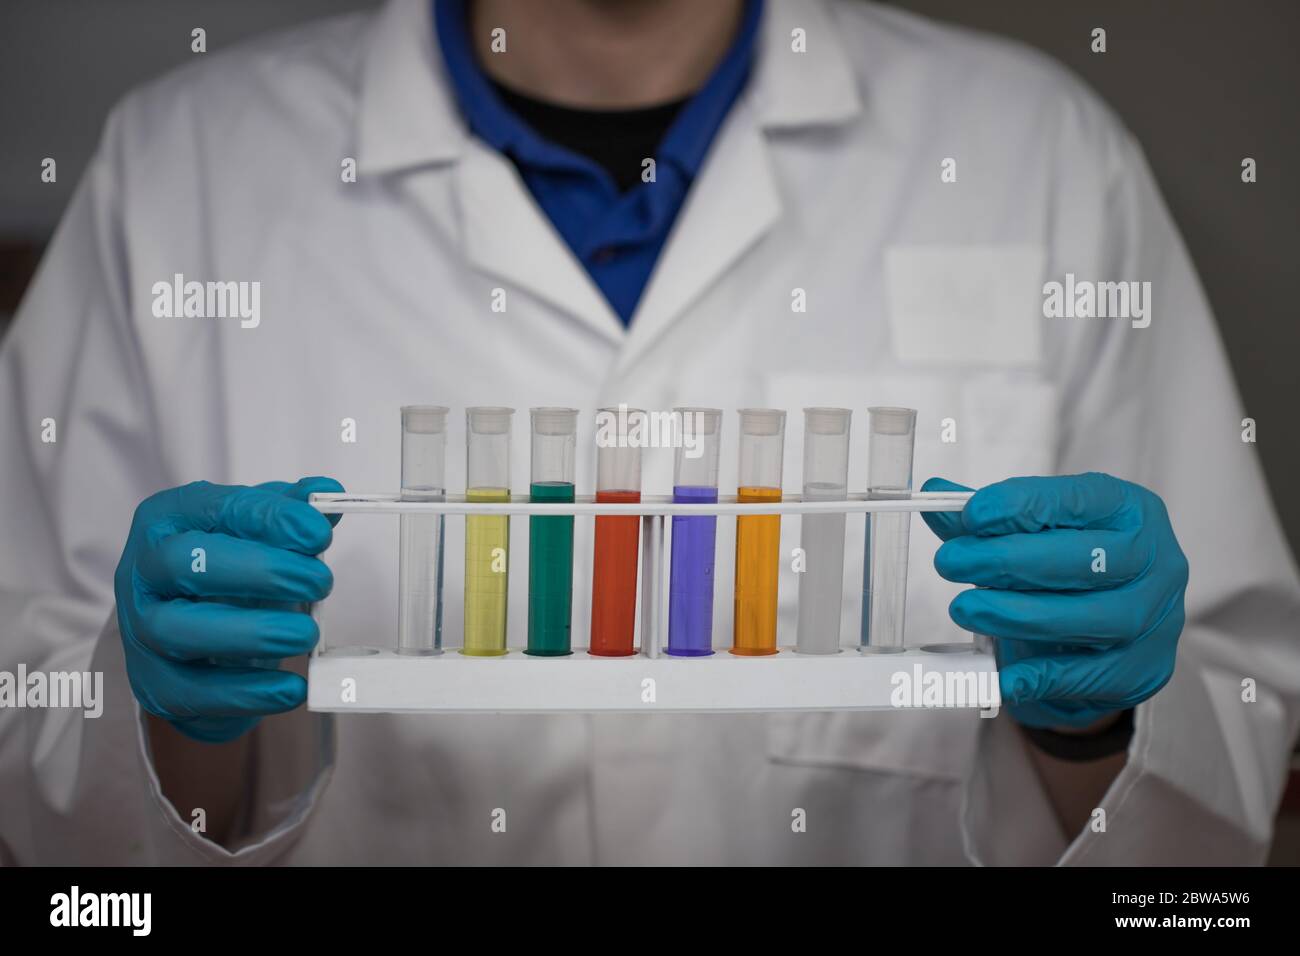 Analisi chimica delle soluzioni in laboratorio. Lo scienziato ha un rack per provette con prodotti chimici colorati Foto Stock